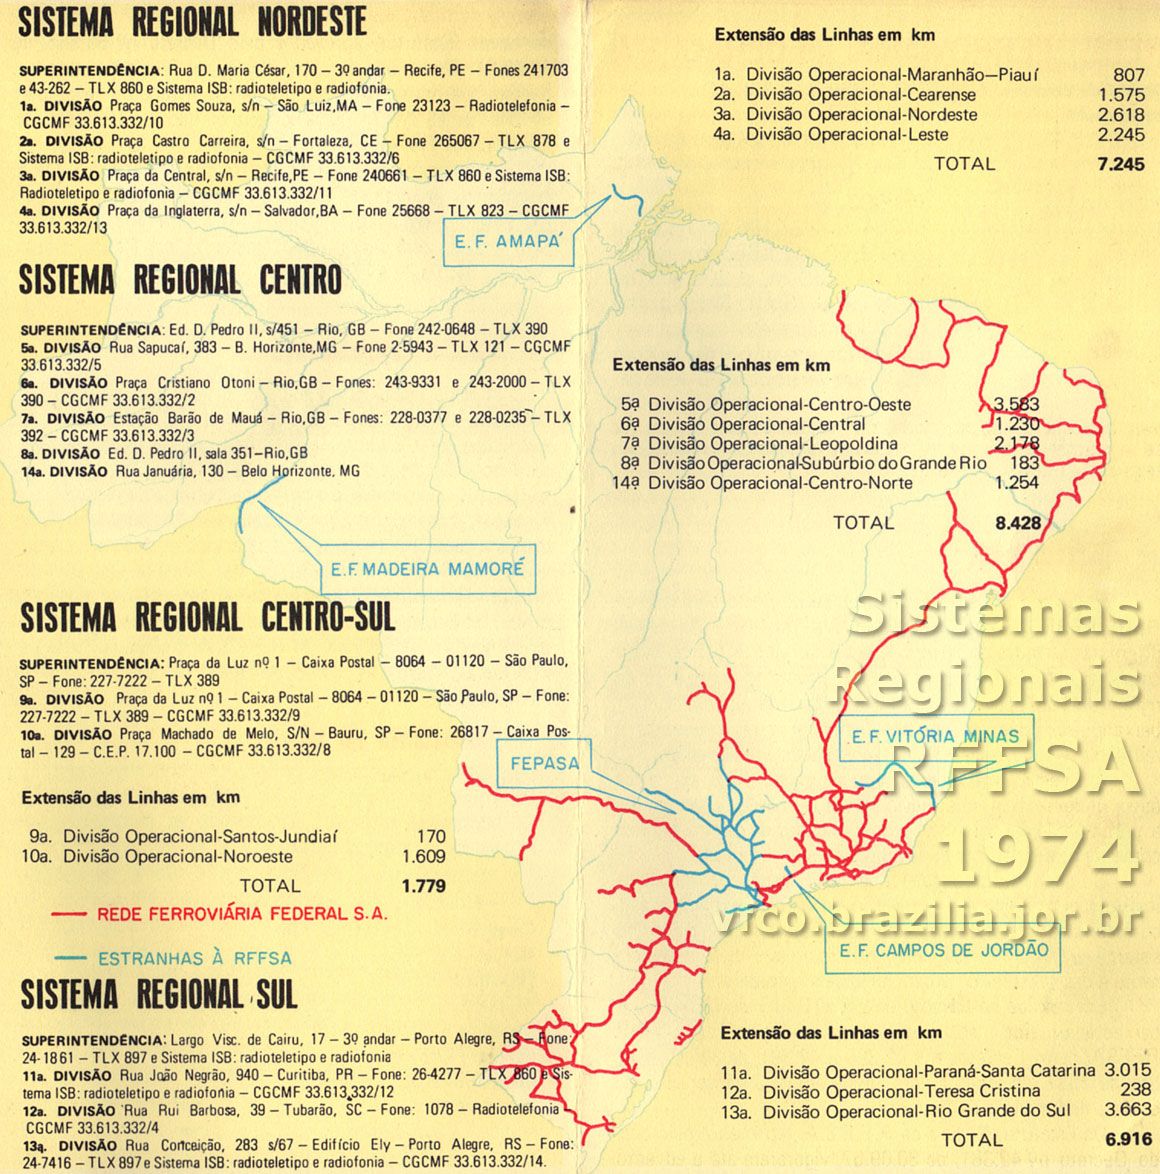 Mapa dos trilhos e diagrama da organização da RFFSA - Rede Ferroviária Federal em "Sistemas Regionais" e "Divisões", em 1974